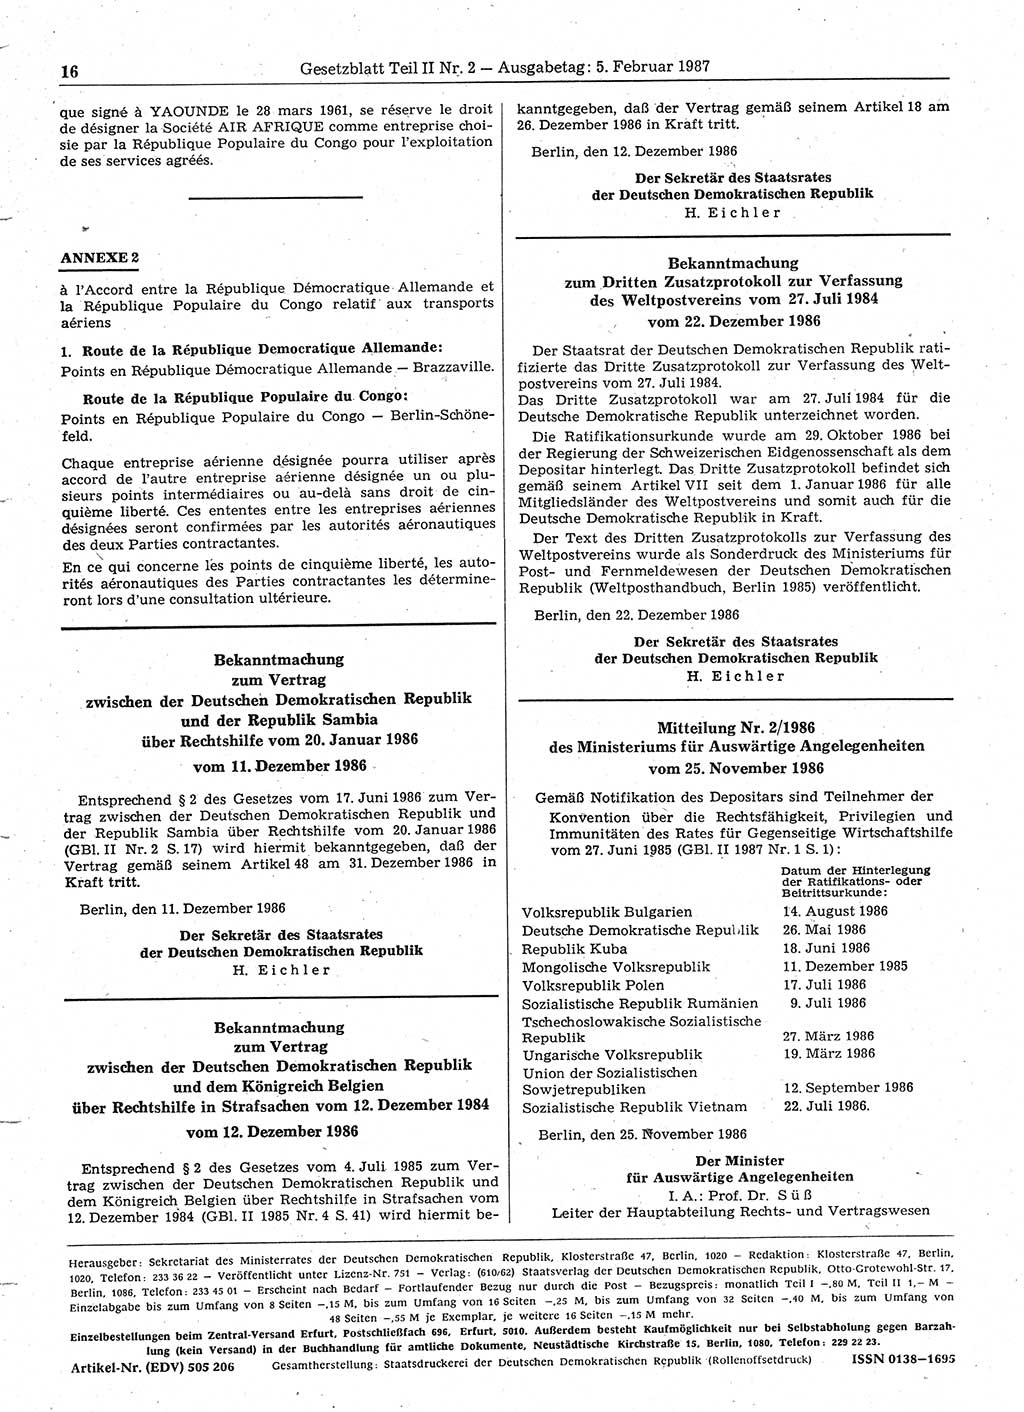 Gesetzblatt (GBl.) der Deutschen Demokratischen Republik (DDR) Teil ⅠⅠ 1987, Seite 16 (GBl. DDR ⅠⅠ 1987, S. 16)